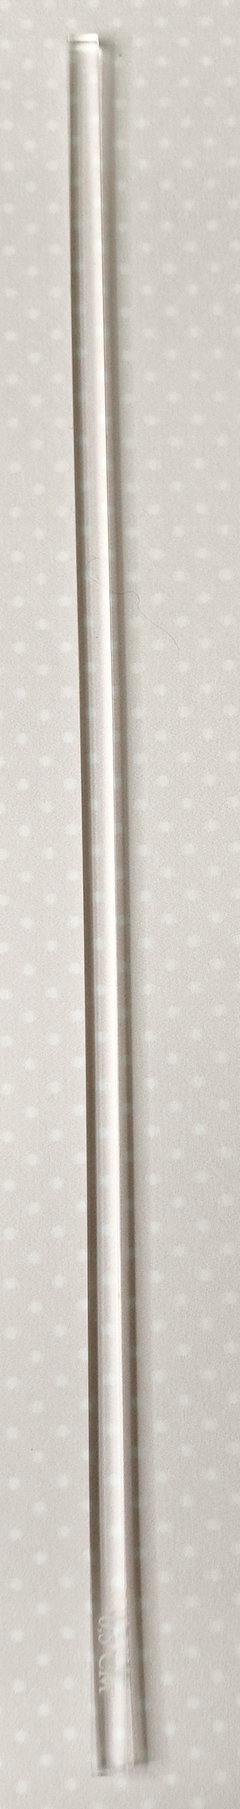 Varilla de Acrílico 0,5 cm x 25 cm